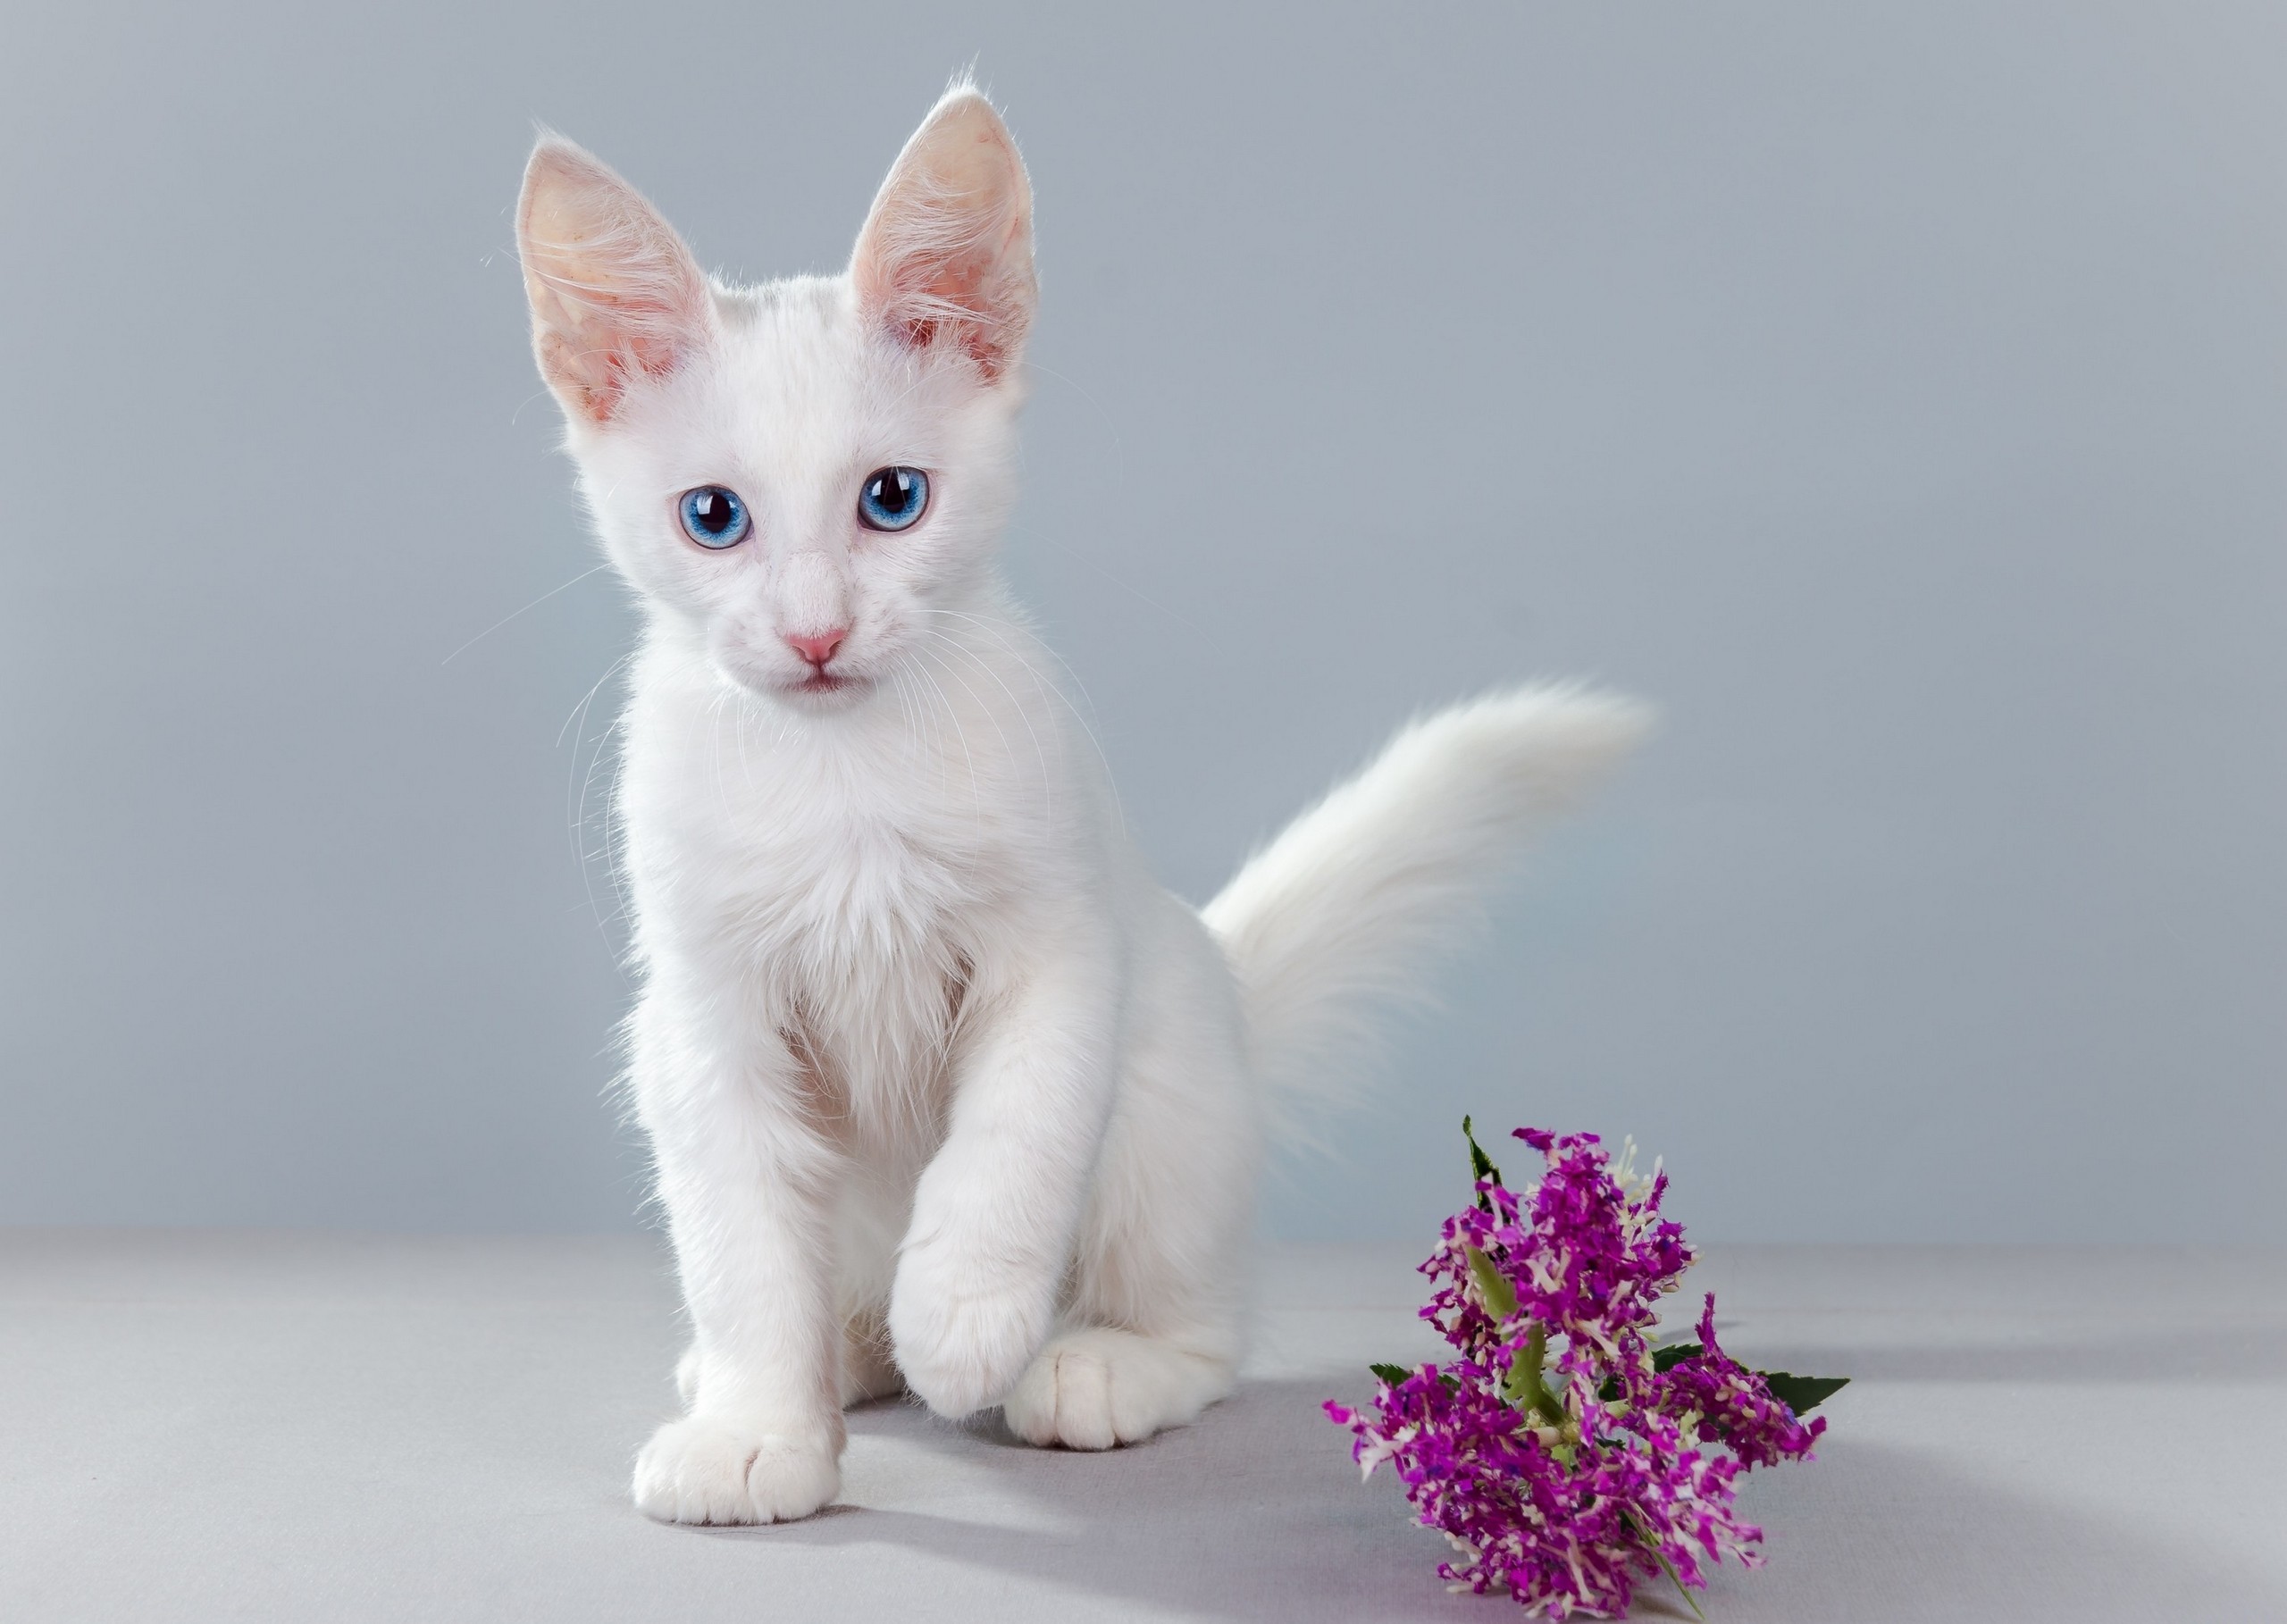 имя для белой кошки с голубыми глазами